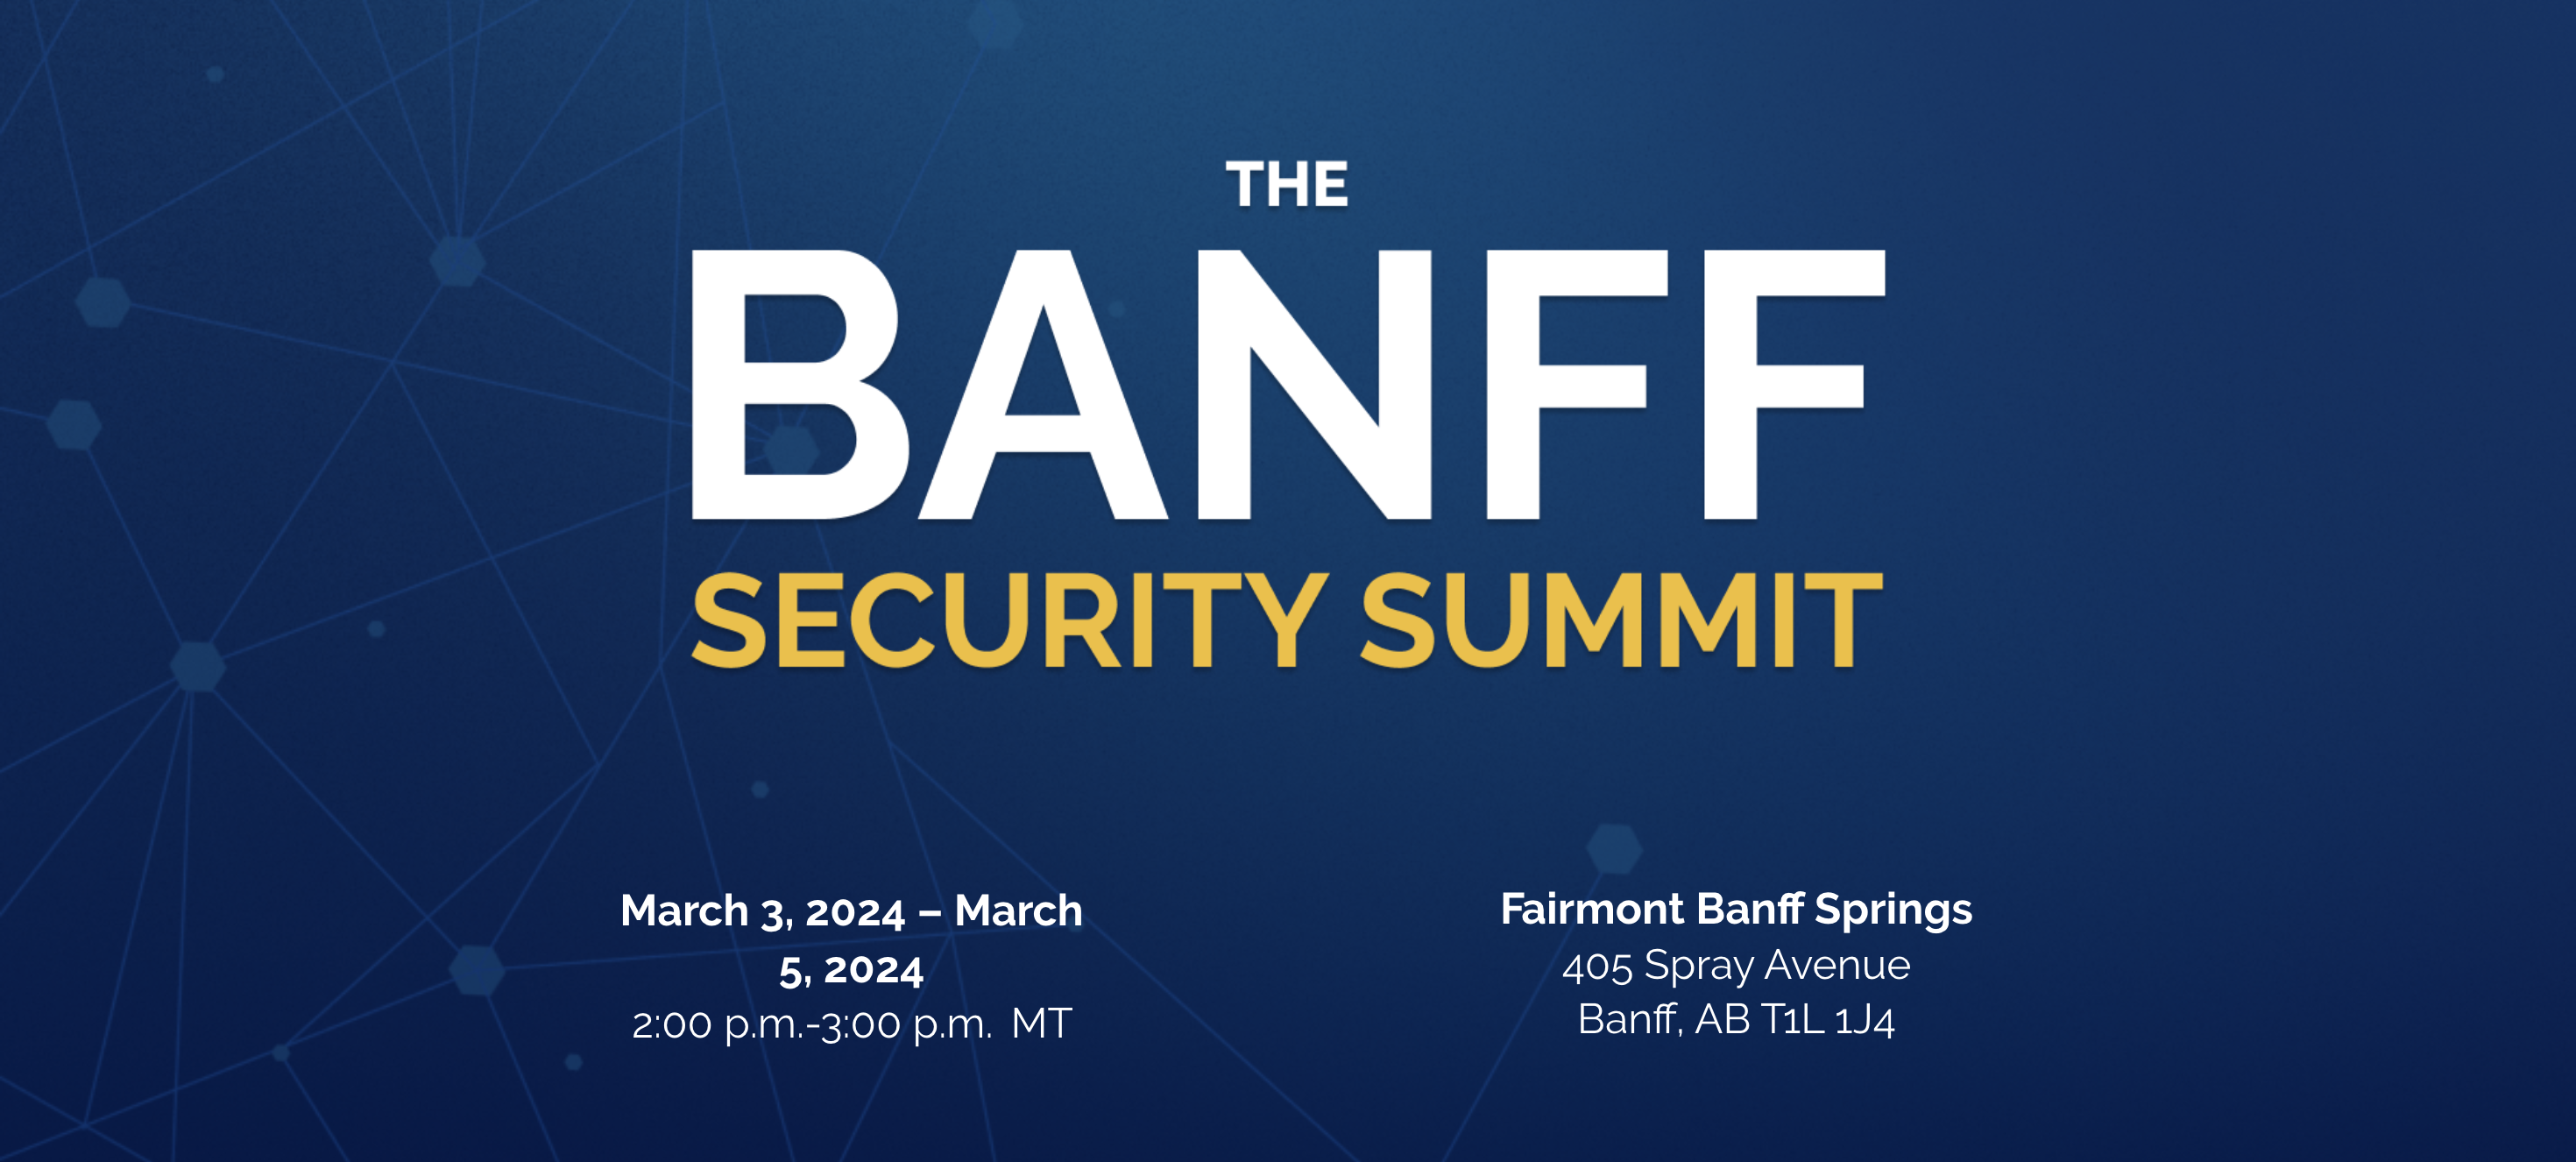 Banff Security Summit 2024 banner